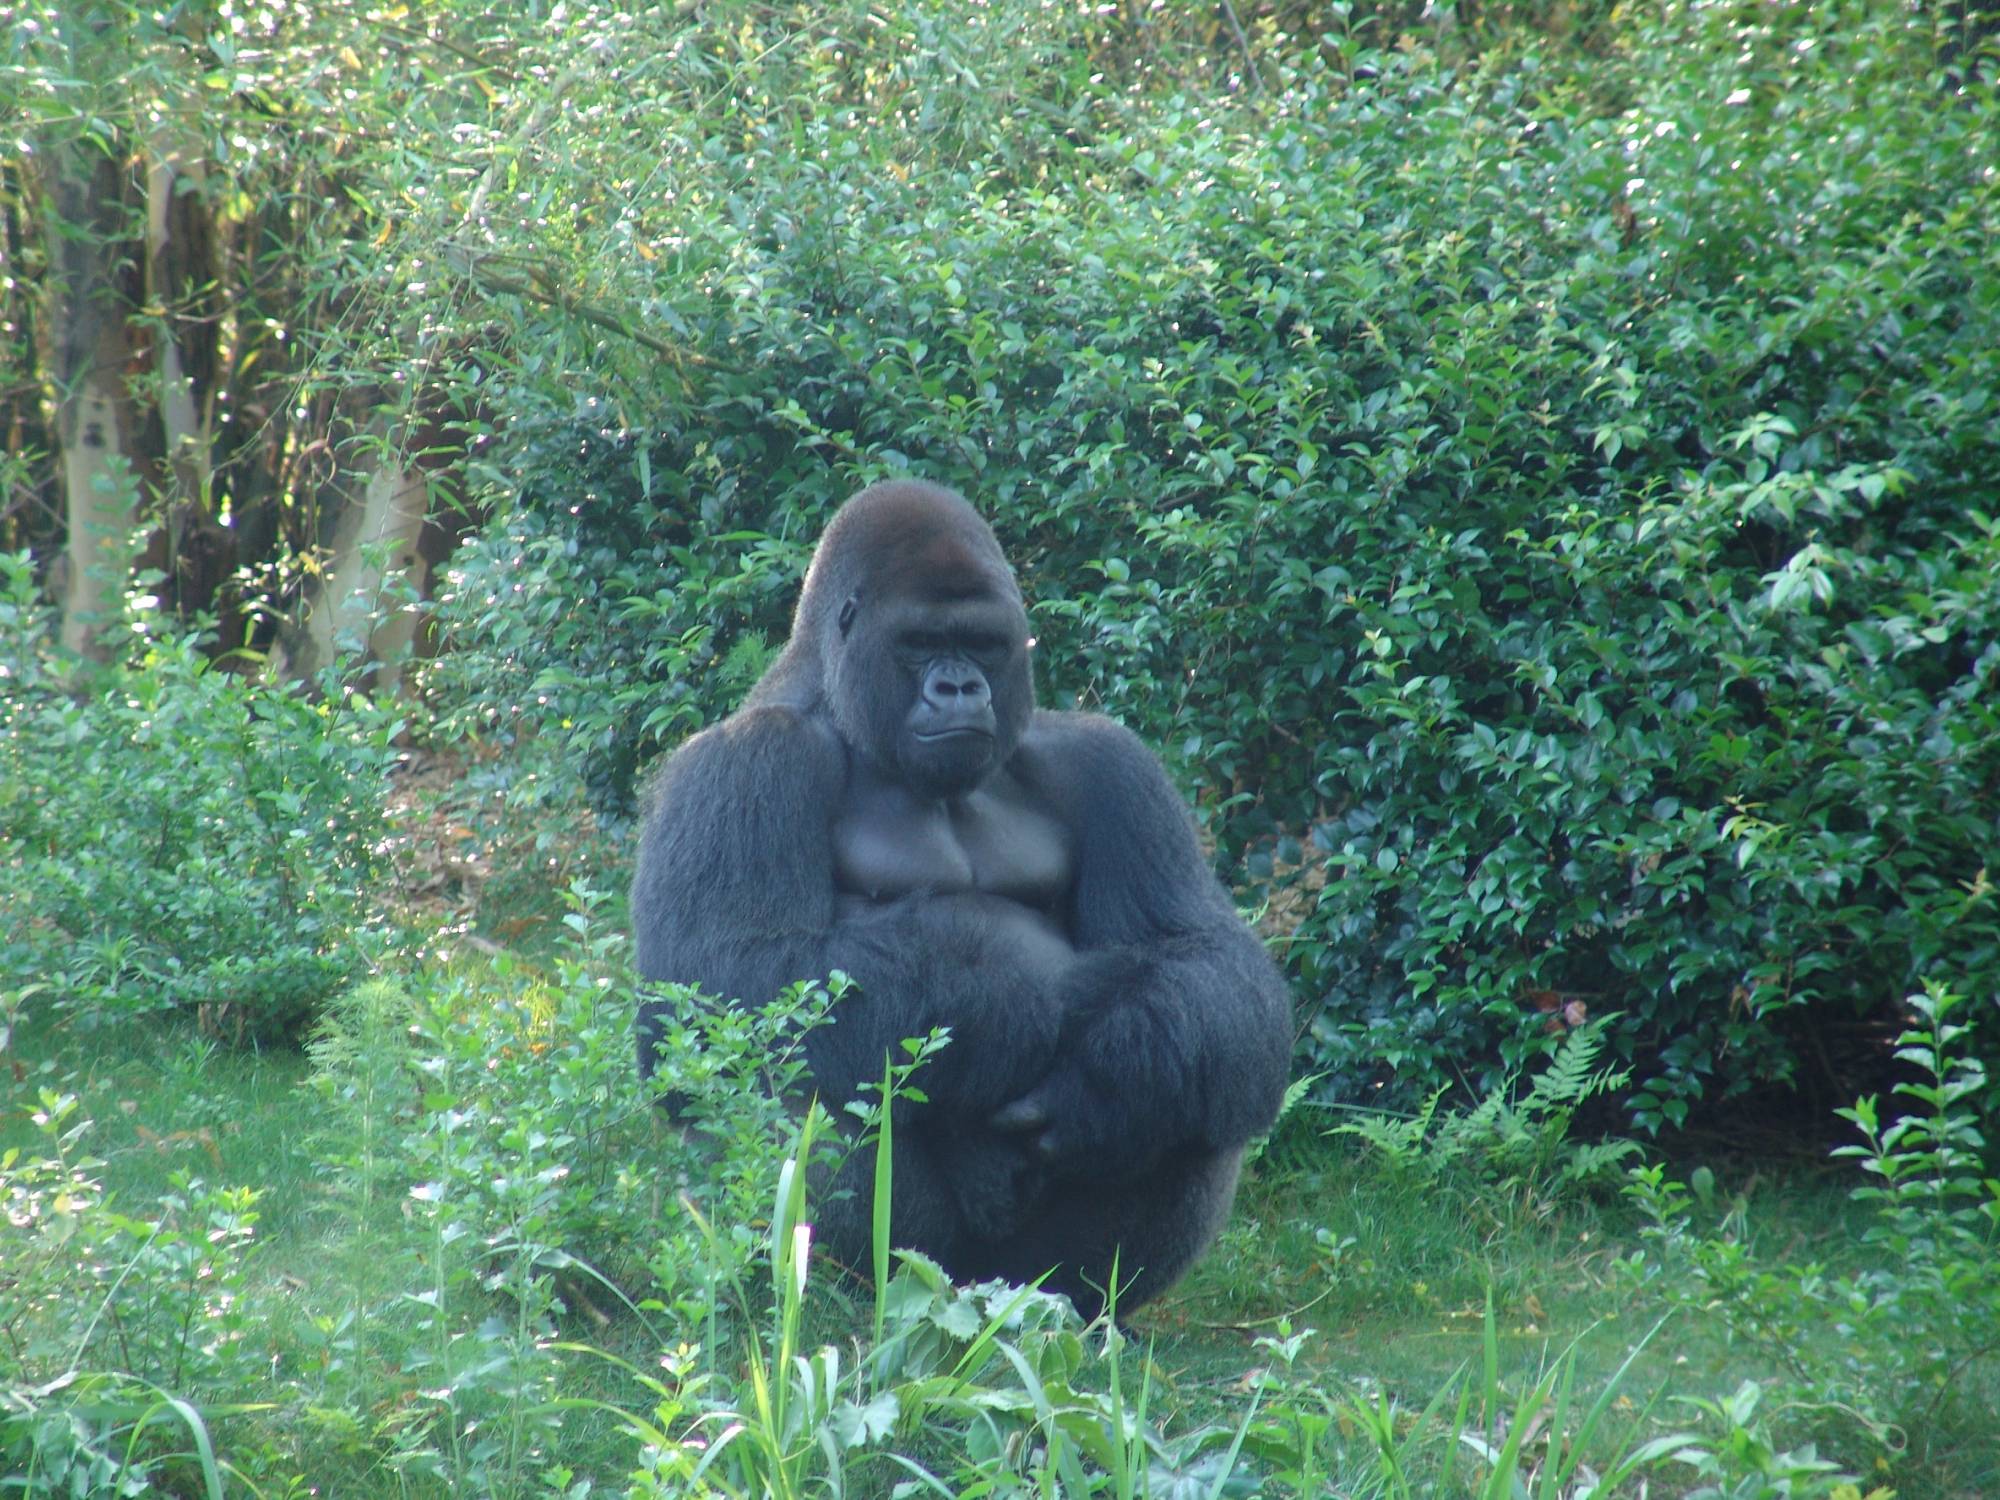 Animal Kingdom - gorillas in Pangani Forest